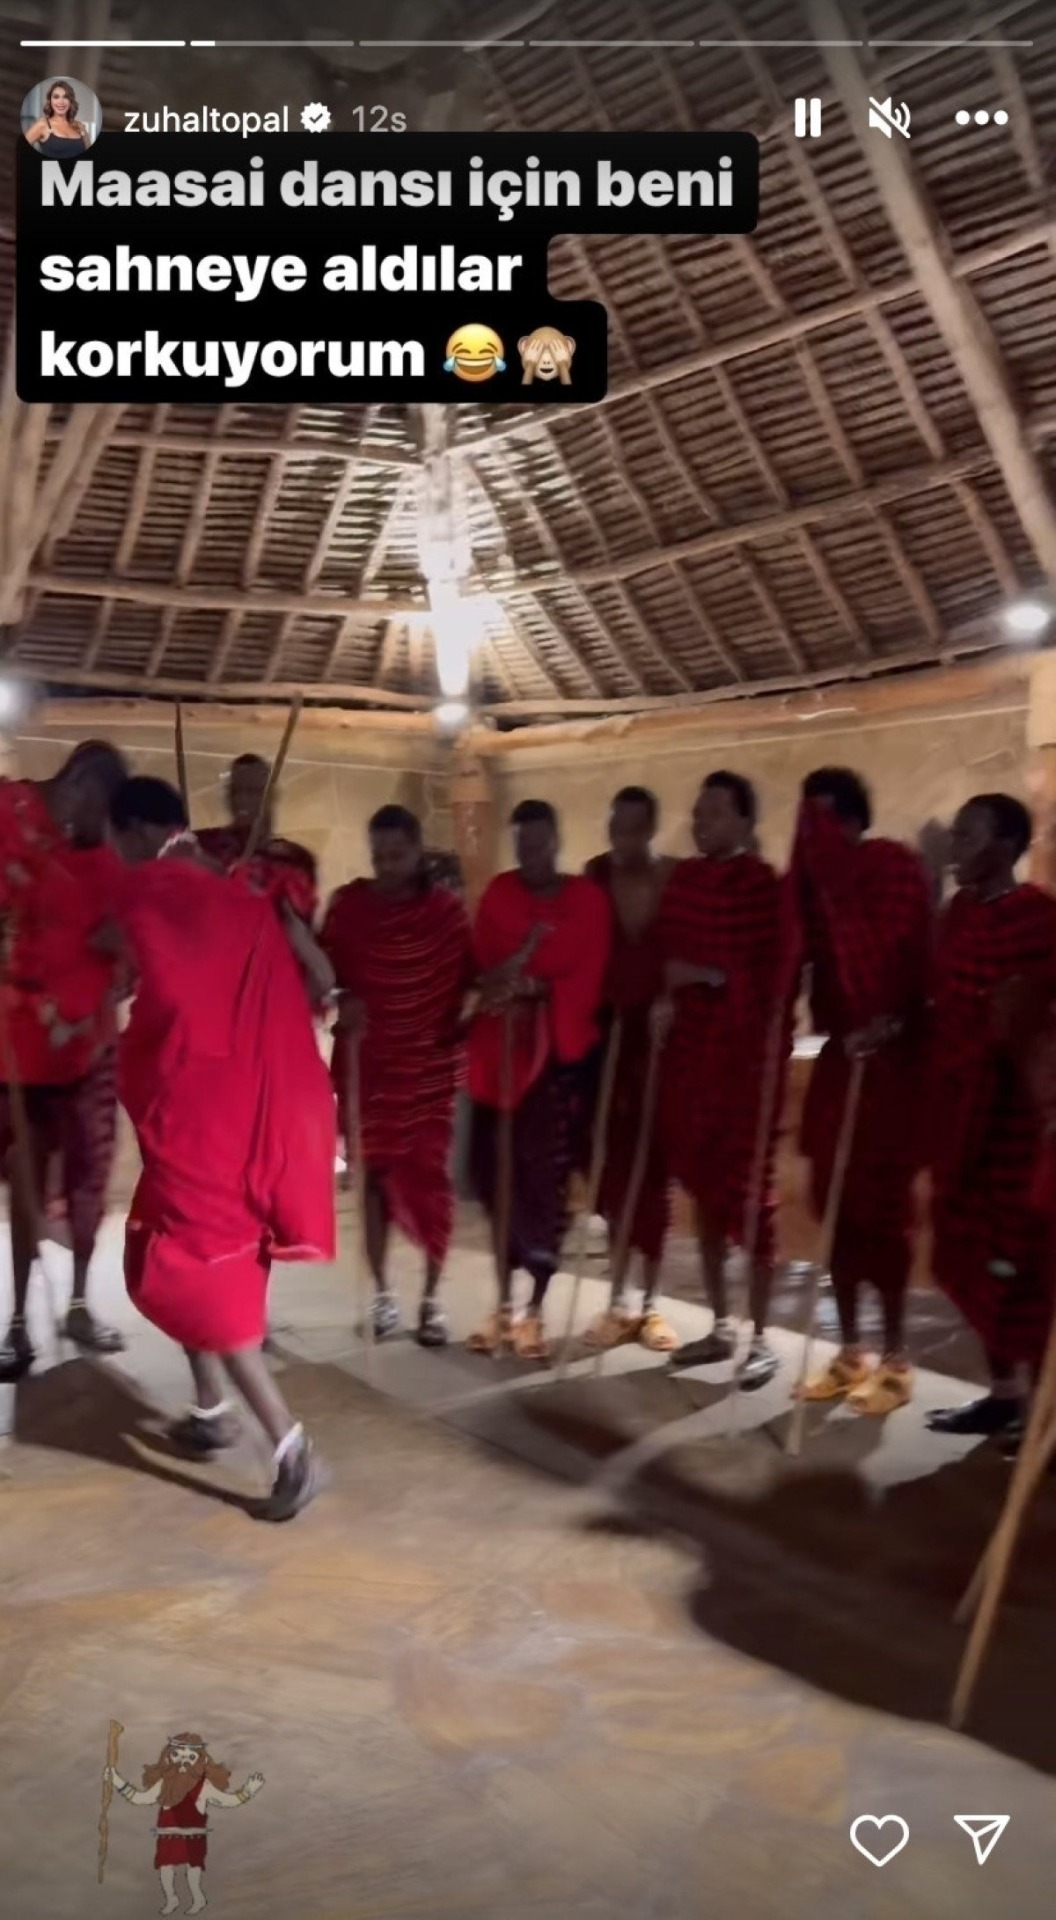 Zuhal Topal, Afrika'da Halka Maasai Dansı Yaptı!